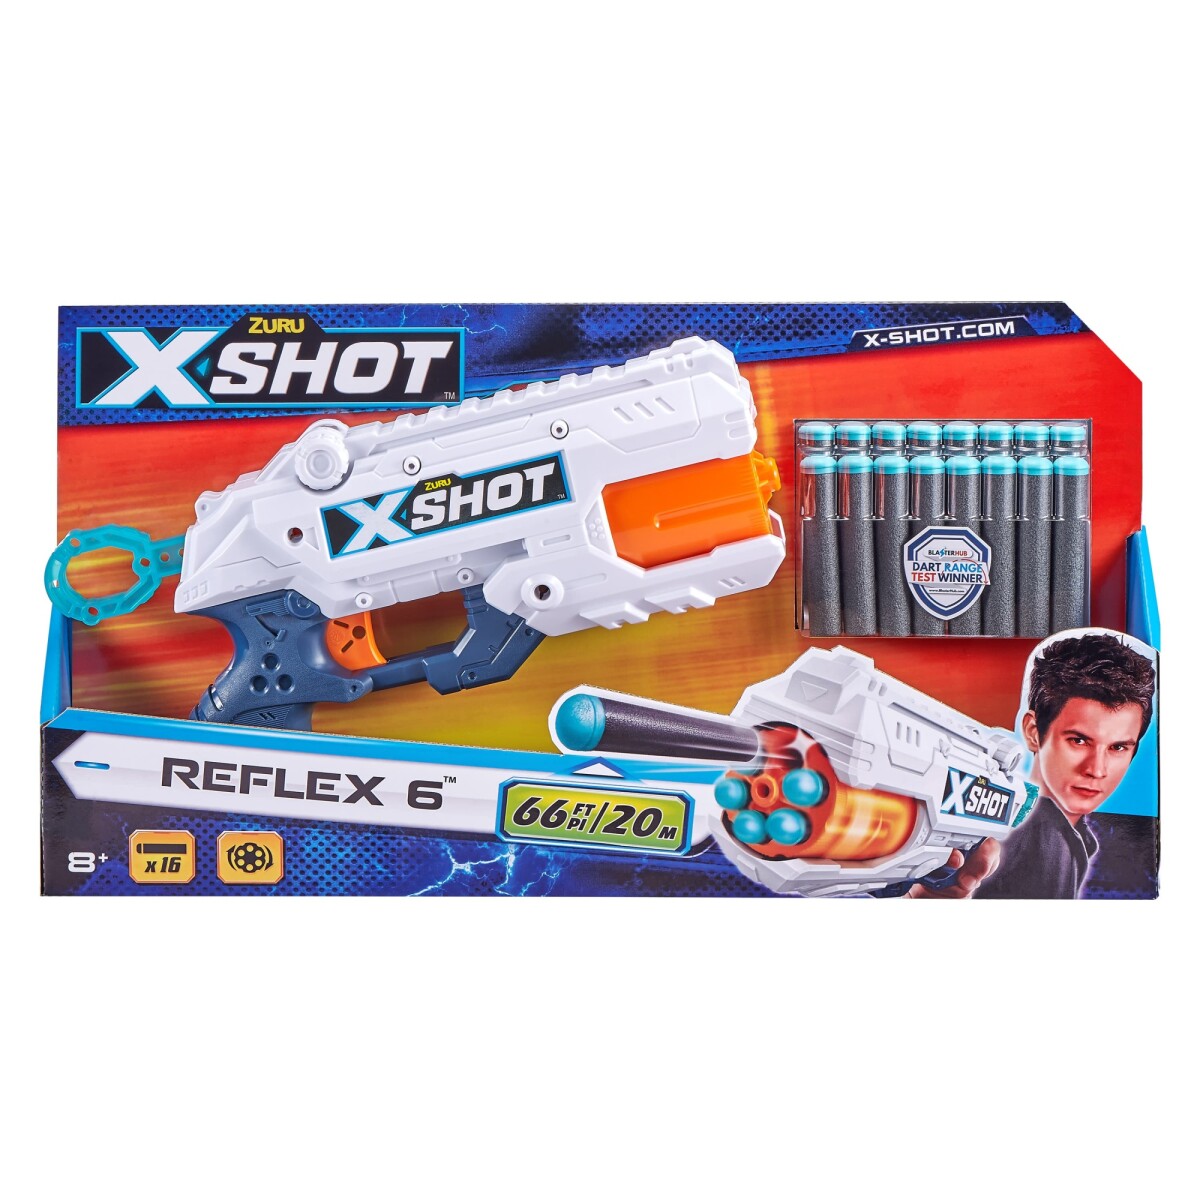 Pistola de Dardos X-shot Excel Reflex 6 con 12 Dardos - 001 